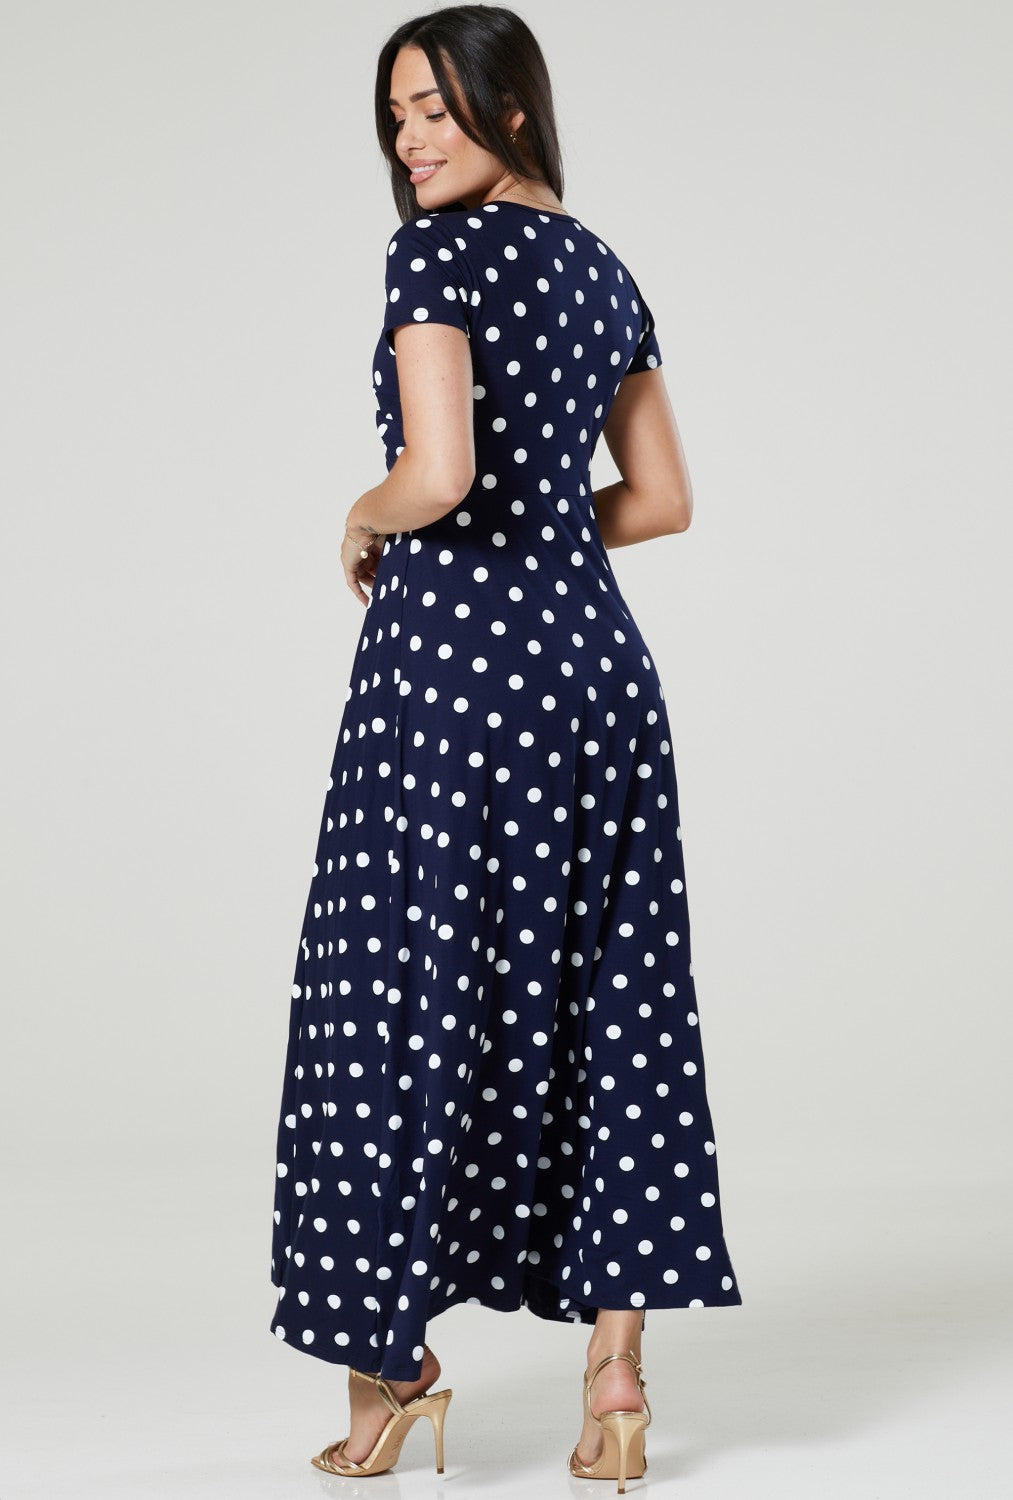 Maternity Nursing Summer Maxi Dress in Dots